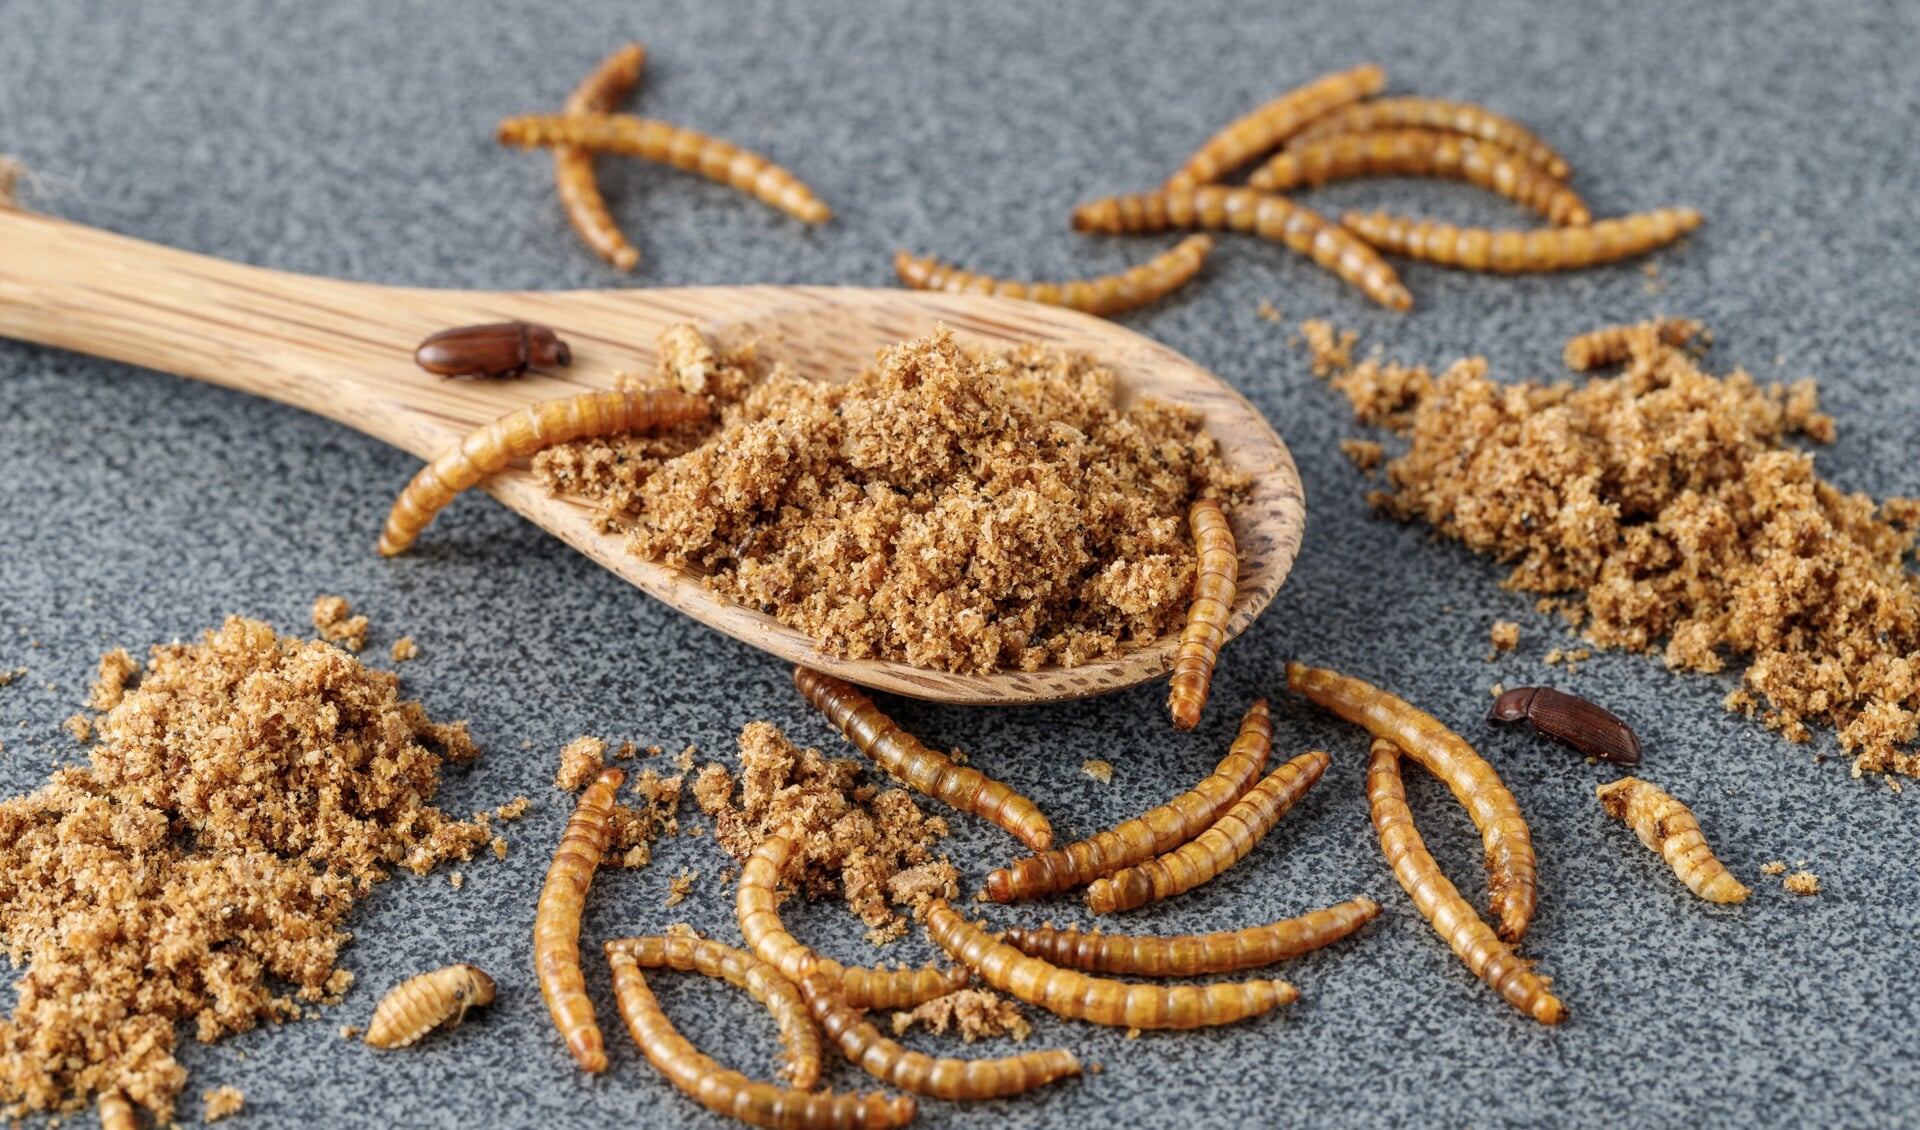 Meelwormen verwerkt in eten? Forum ziet het niet zitten. (Foto: AdobeStock)